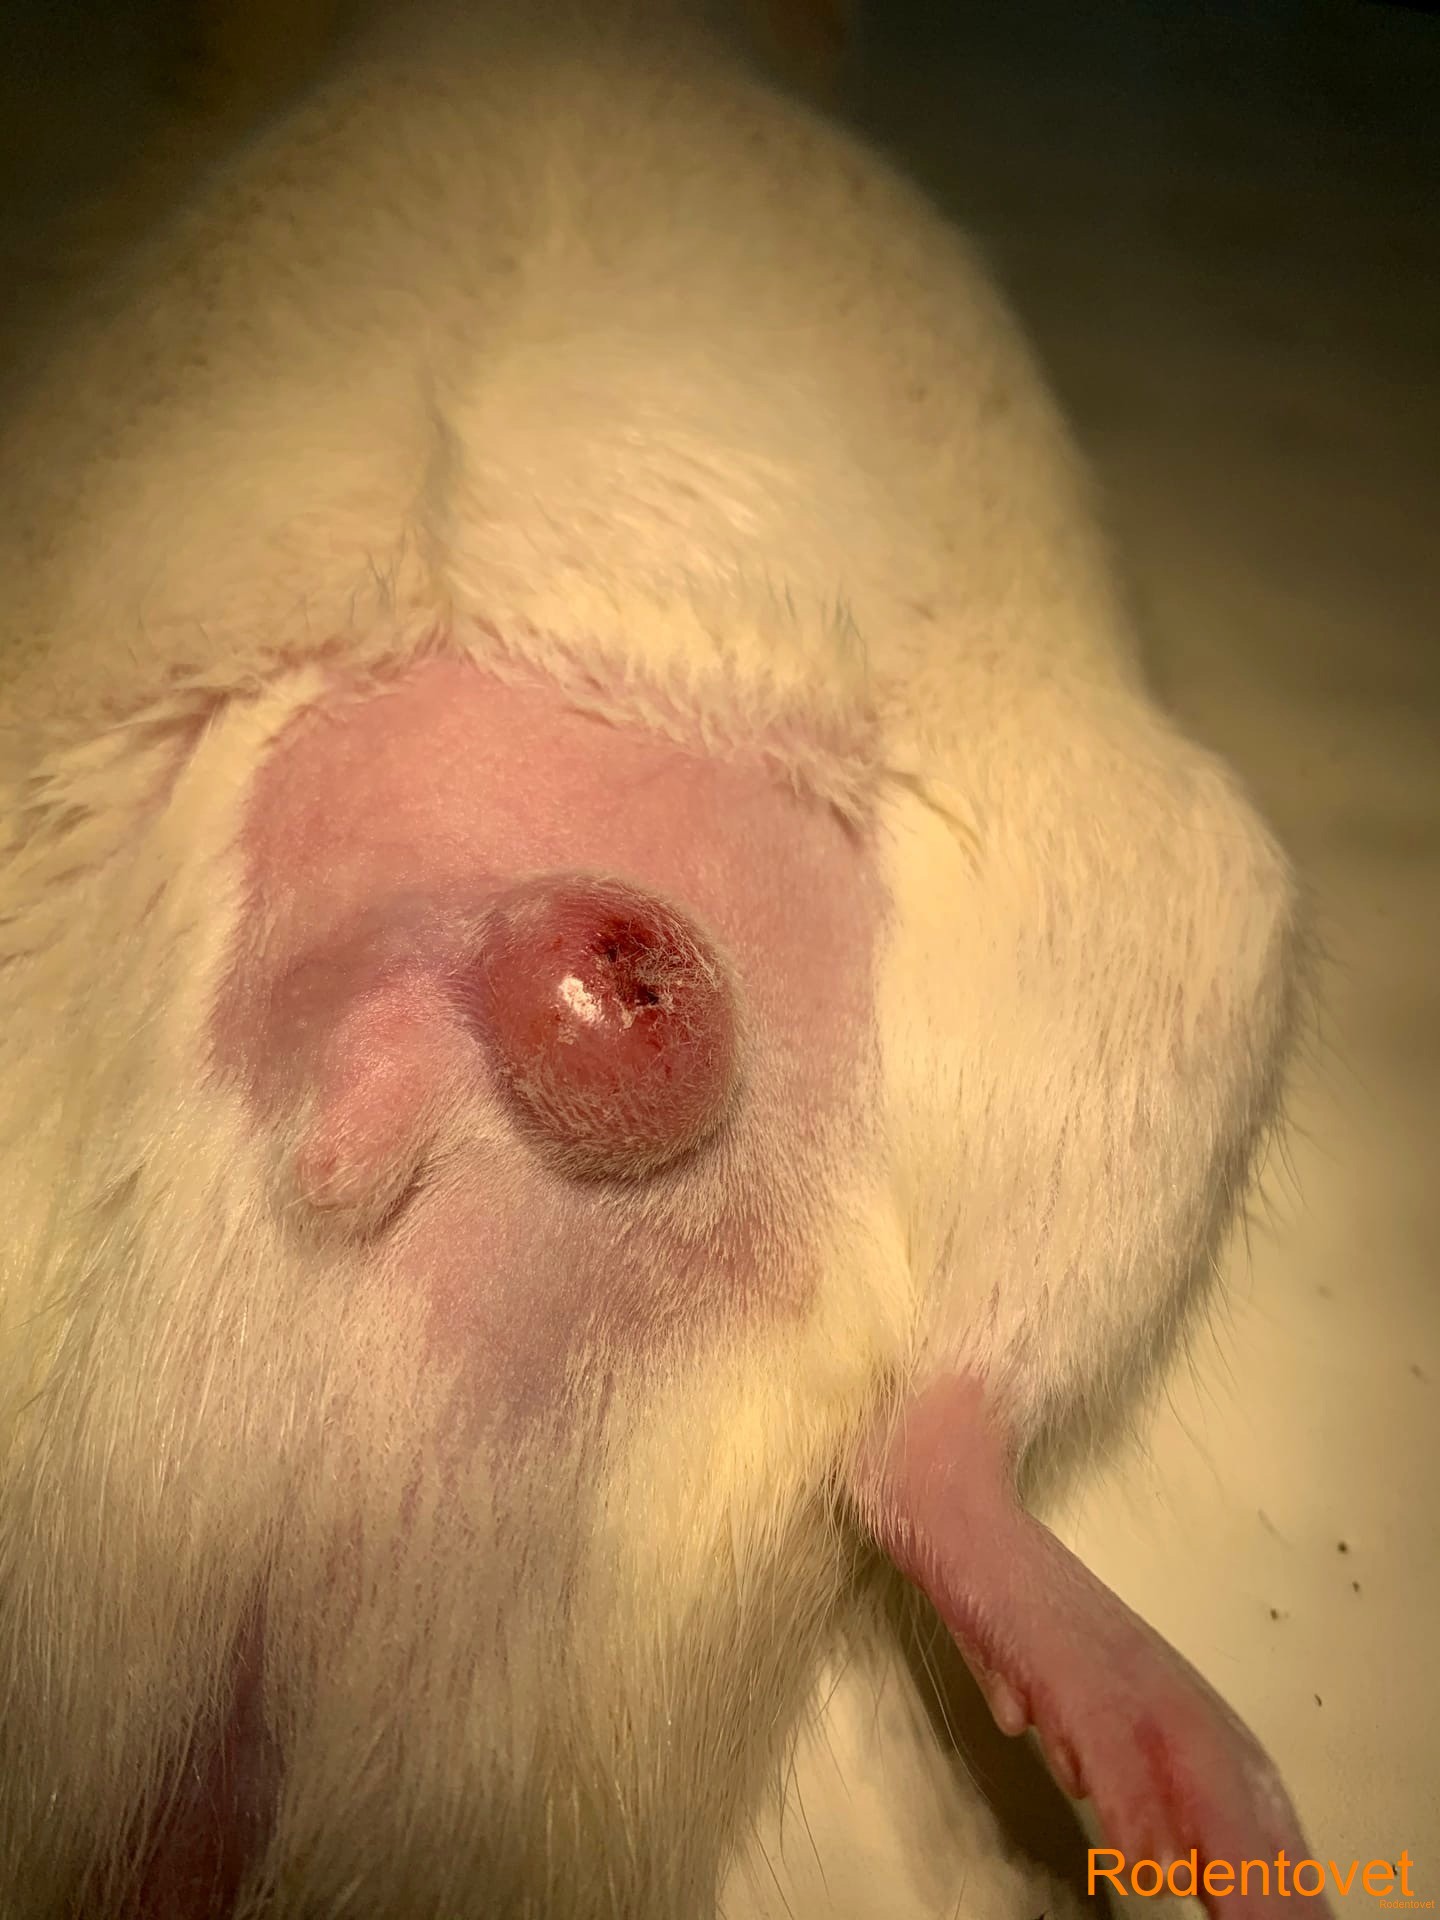 Хирургия гнойного процесса у самца декоративной крысы